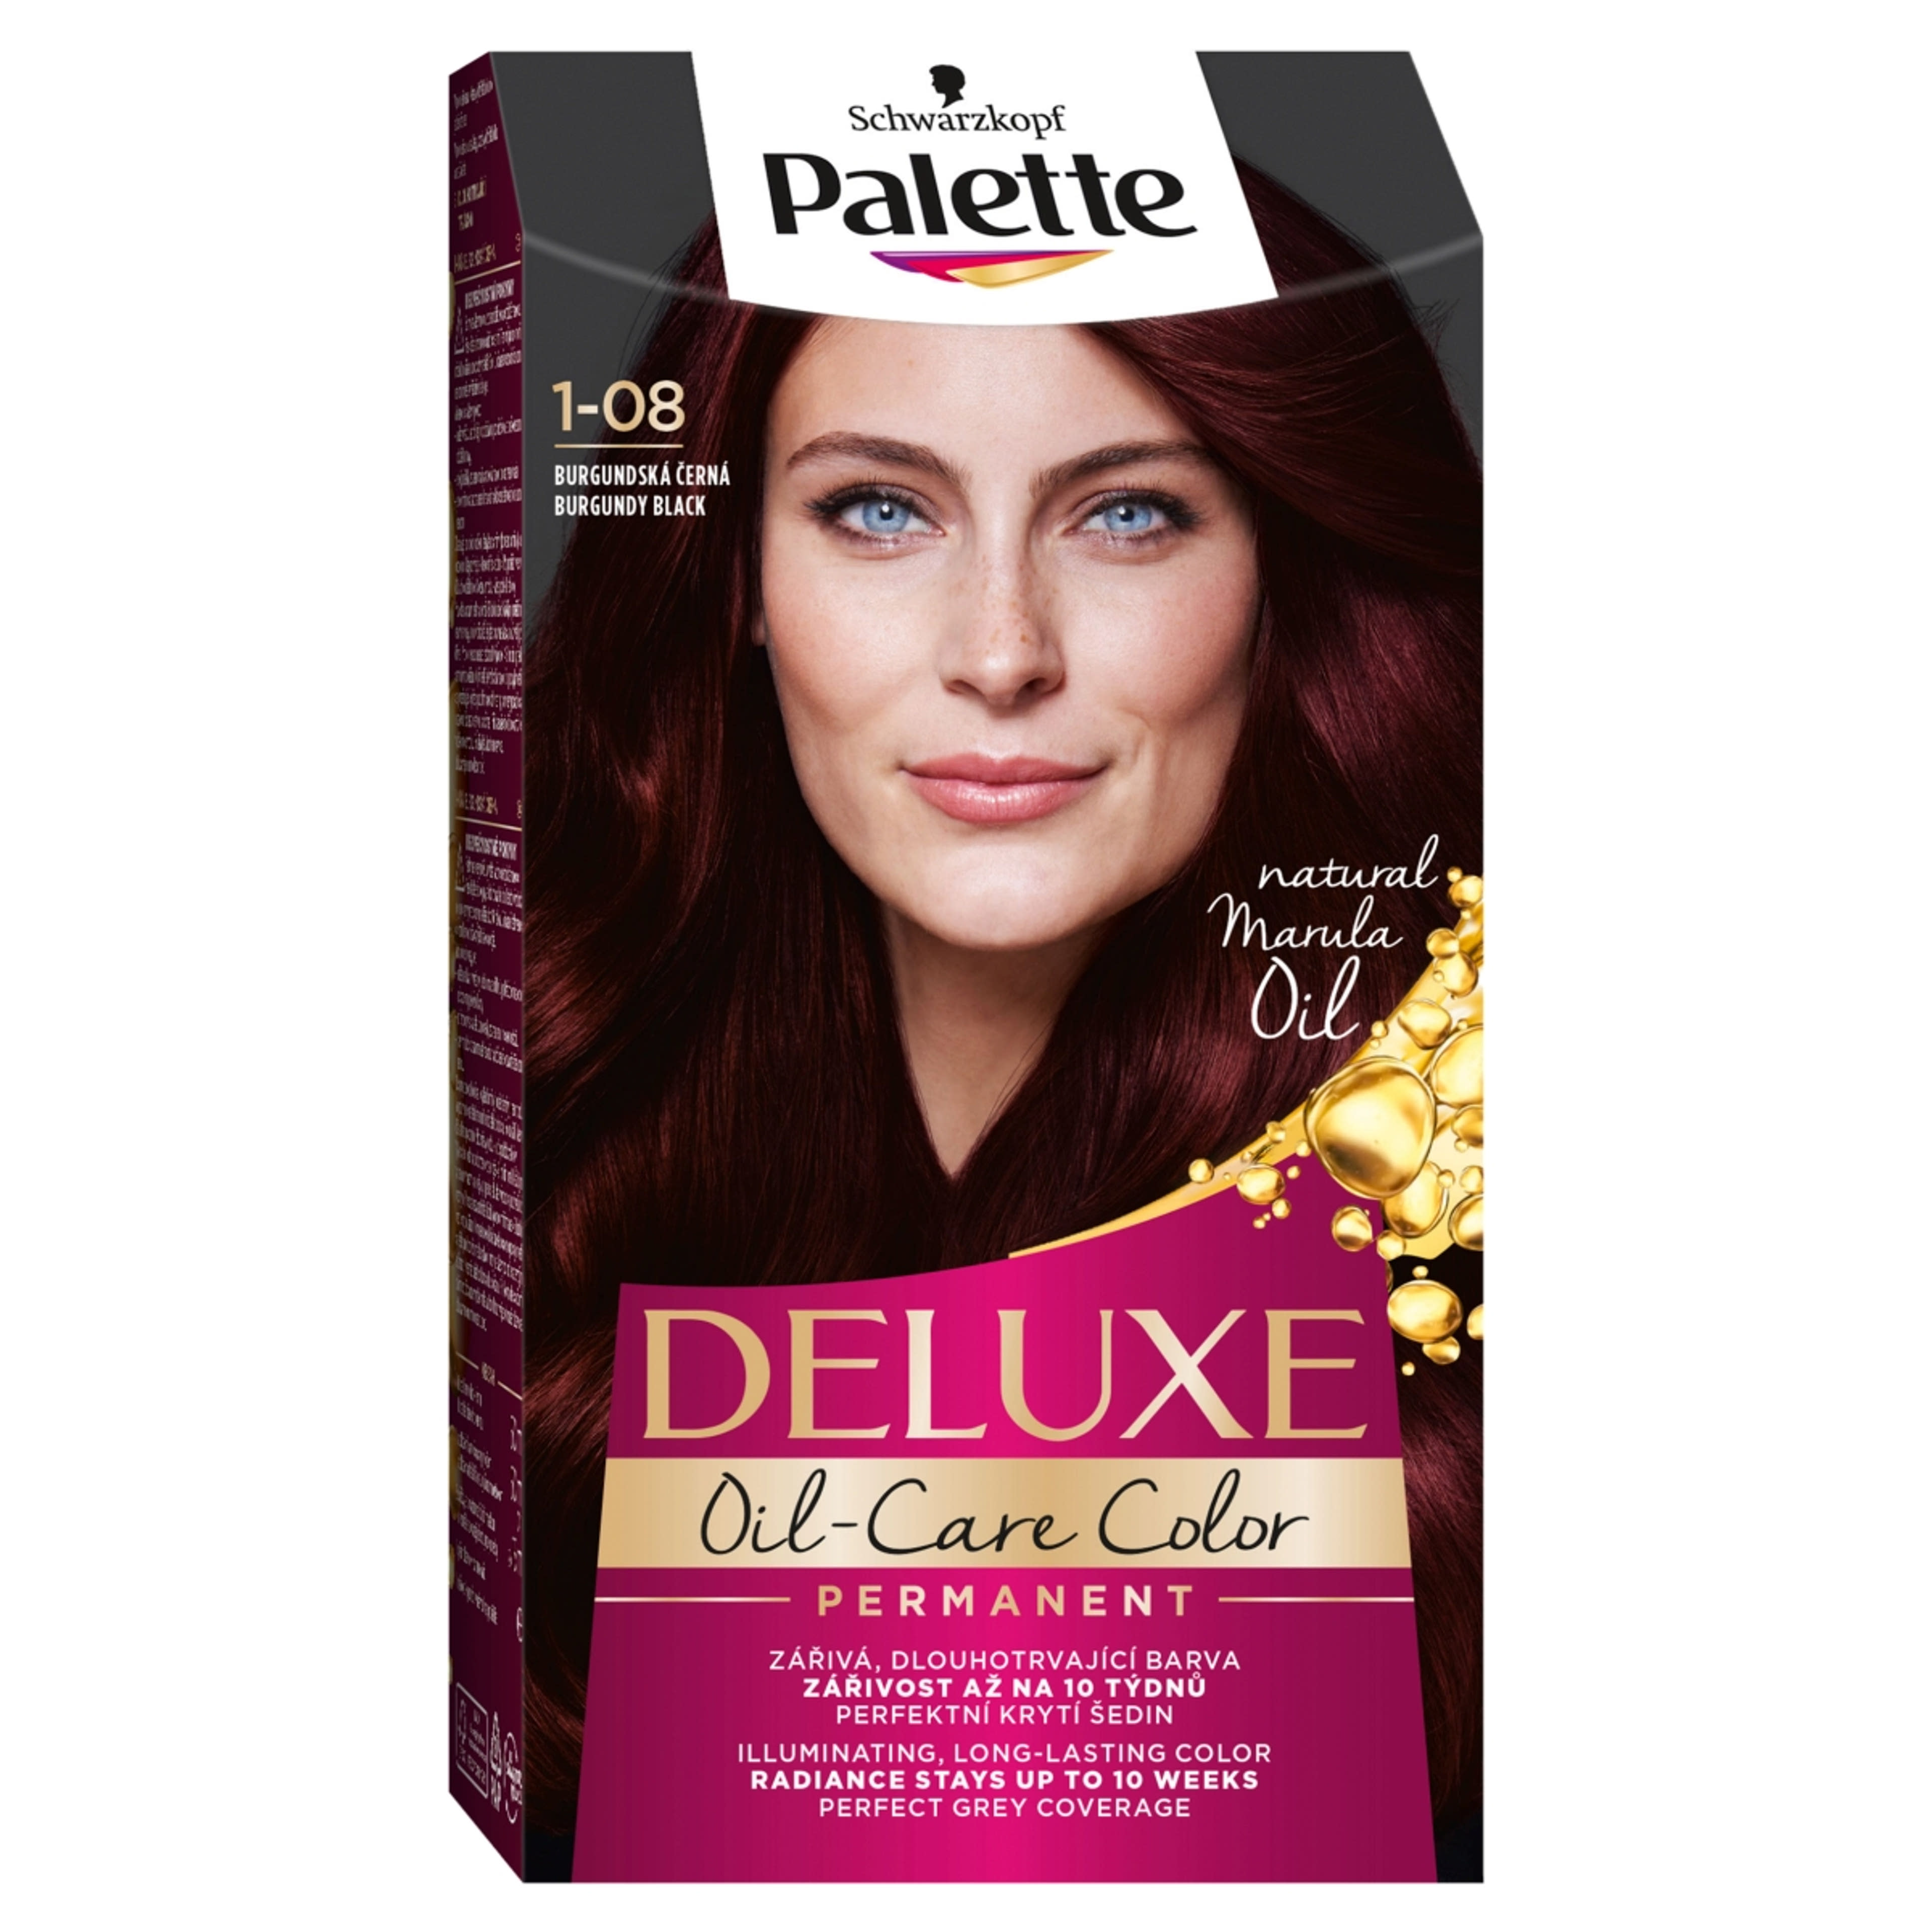 Palette Delux hajfesték, 1-08 burgundi fekete - 1 db